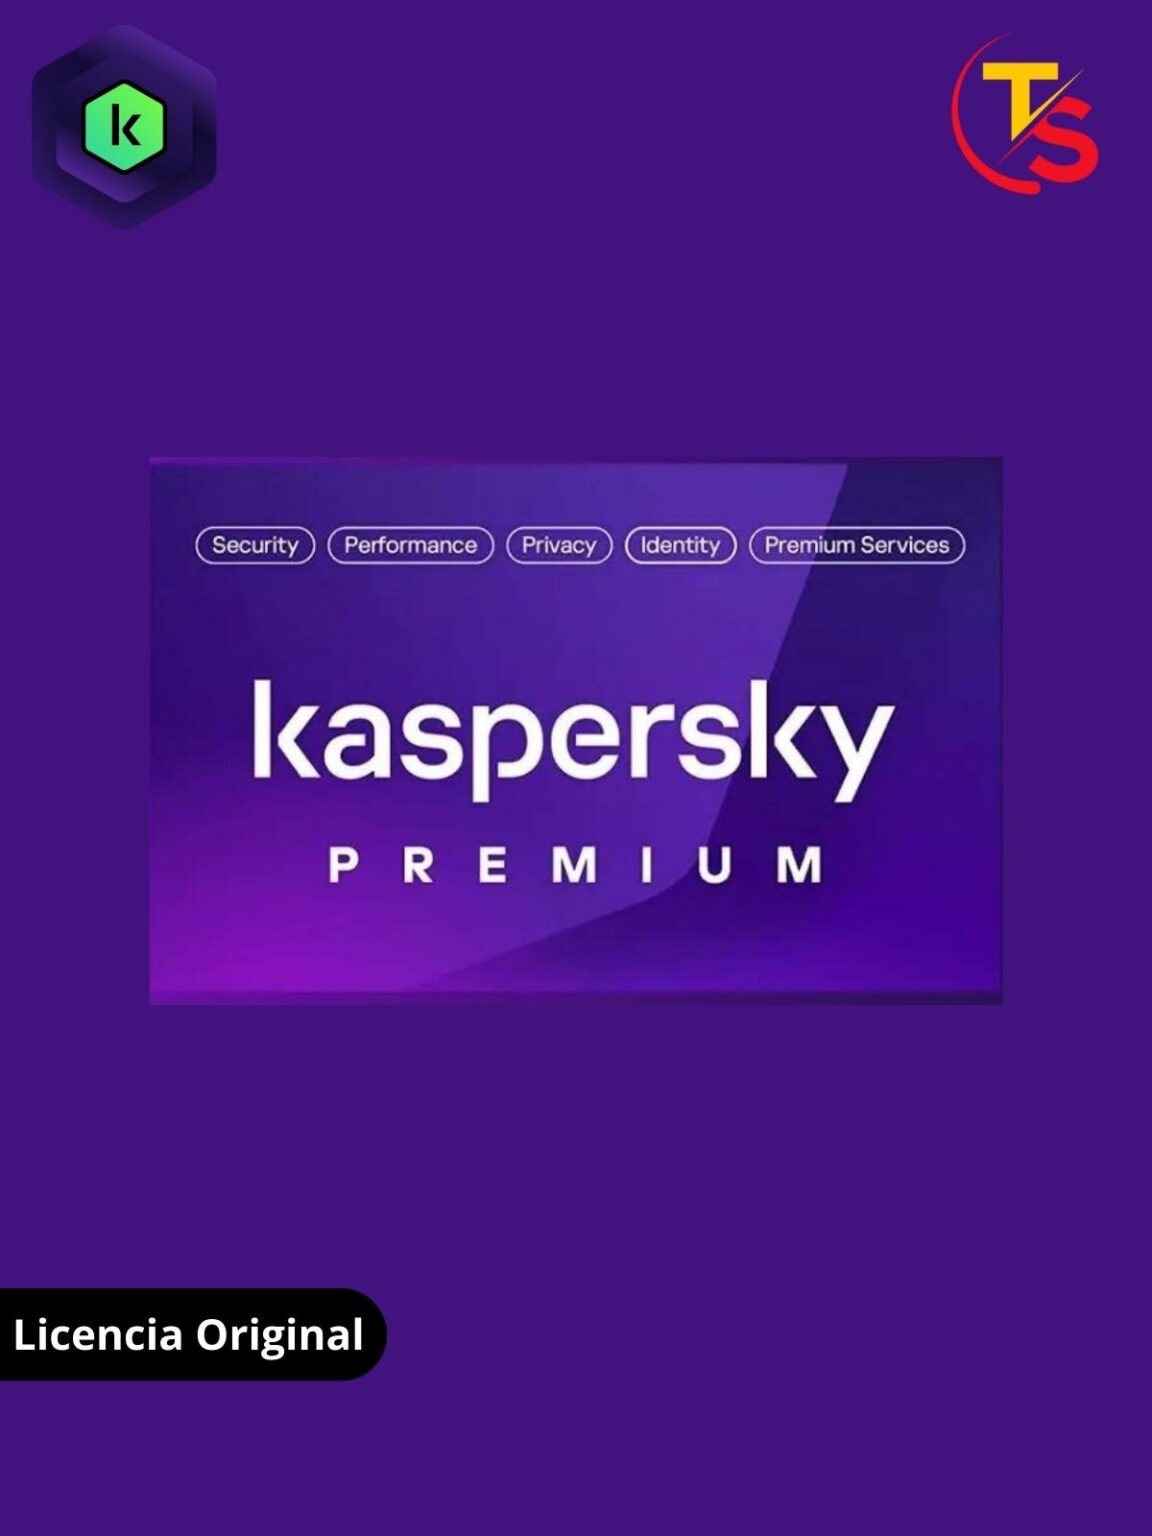 Comprar Kaspersky en la tienda del software